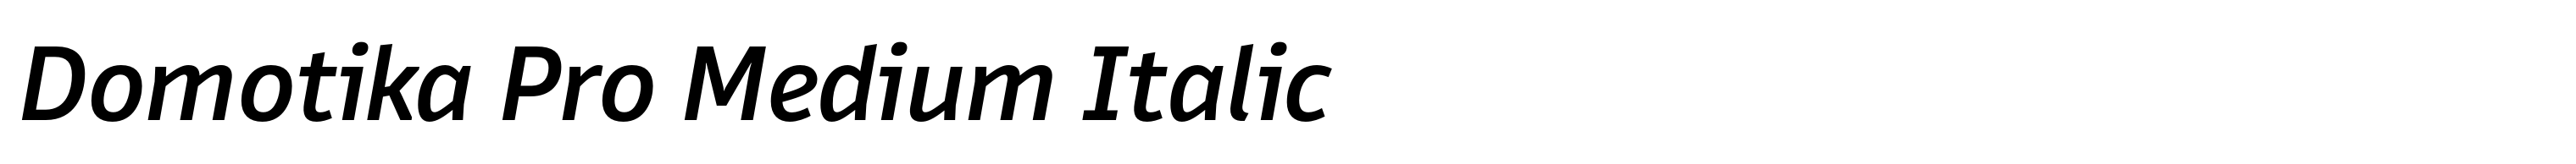 Domotika Pro Medium Italic